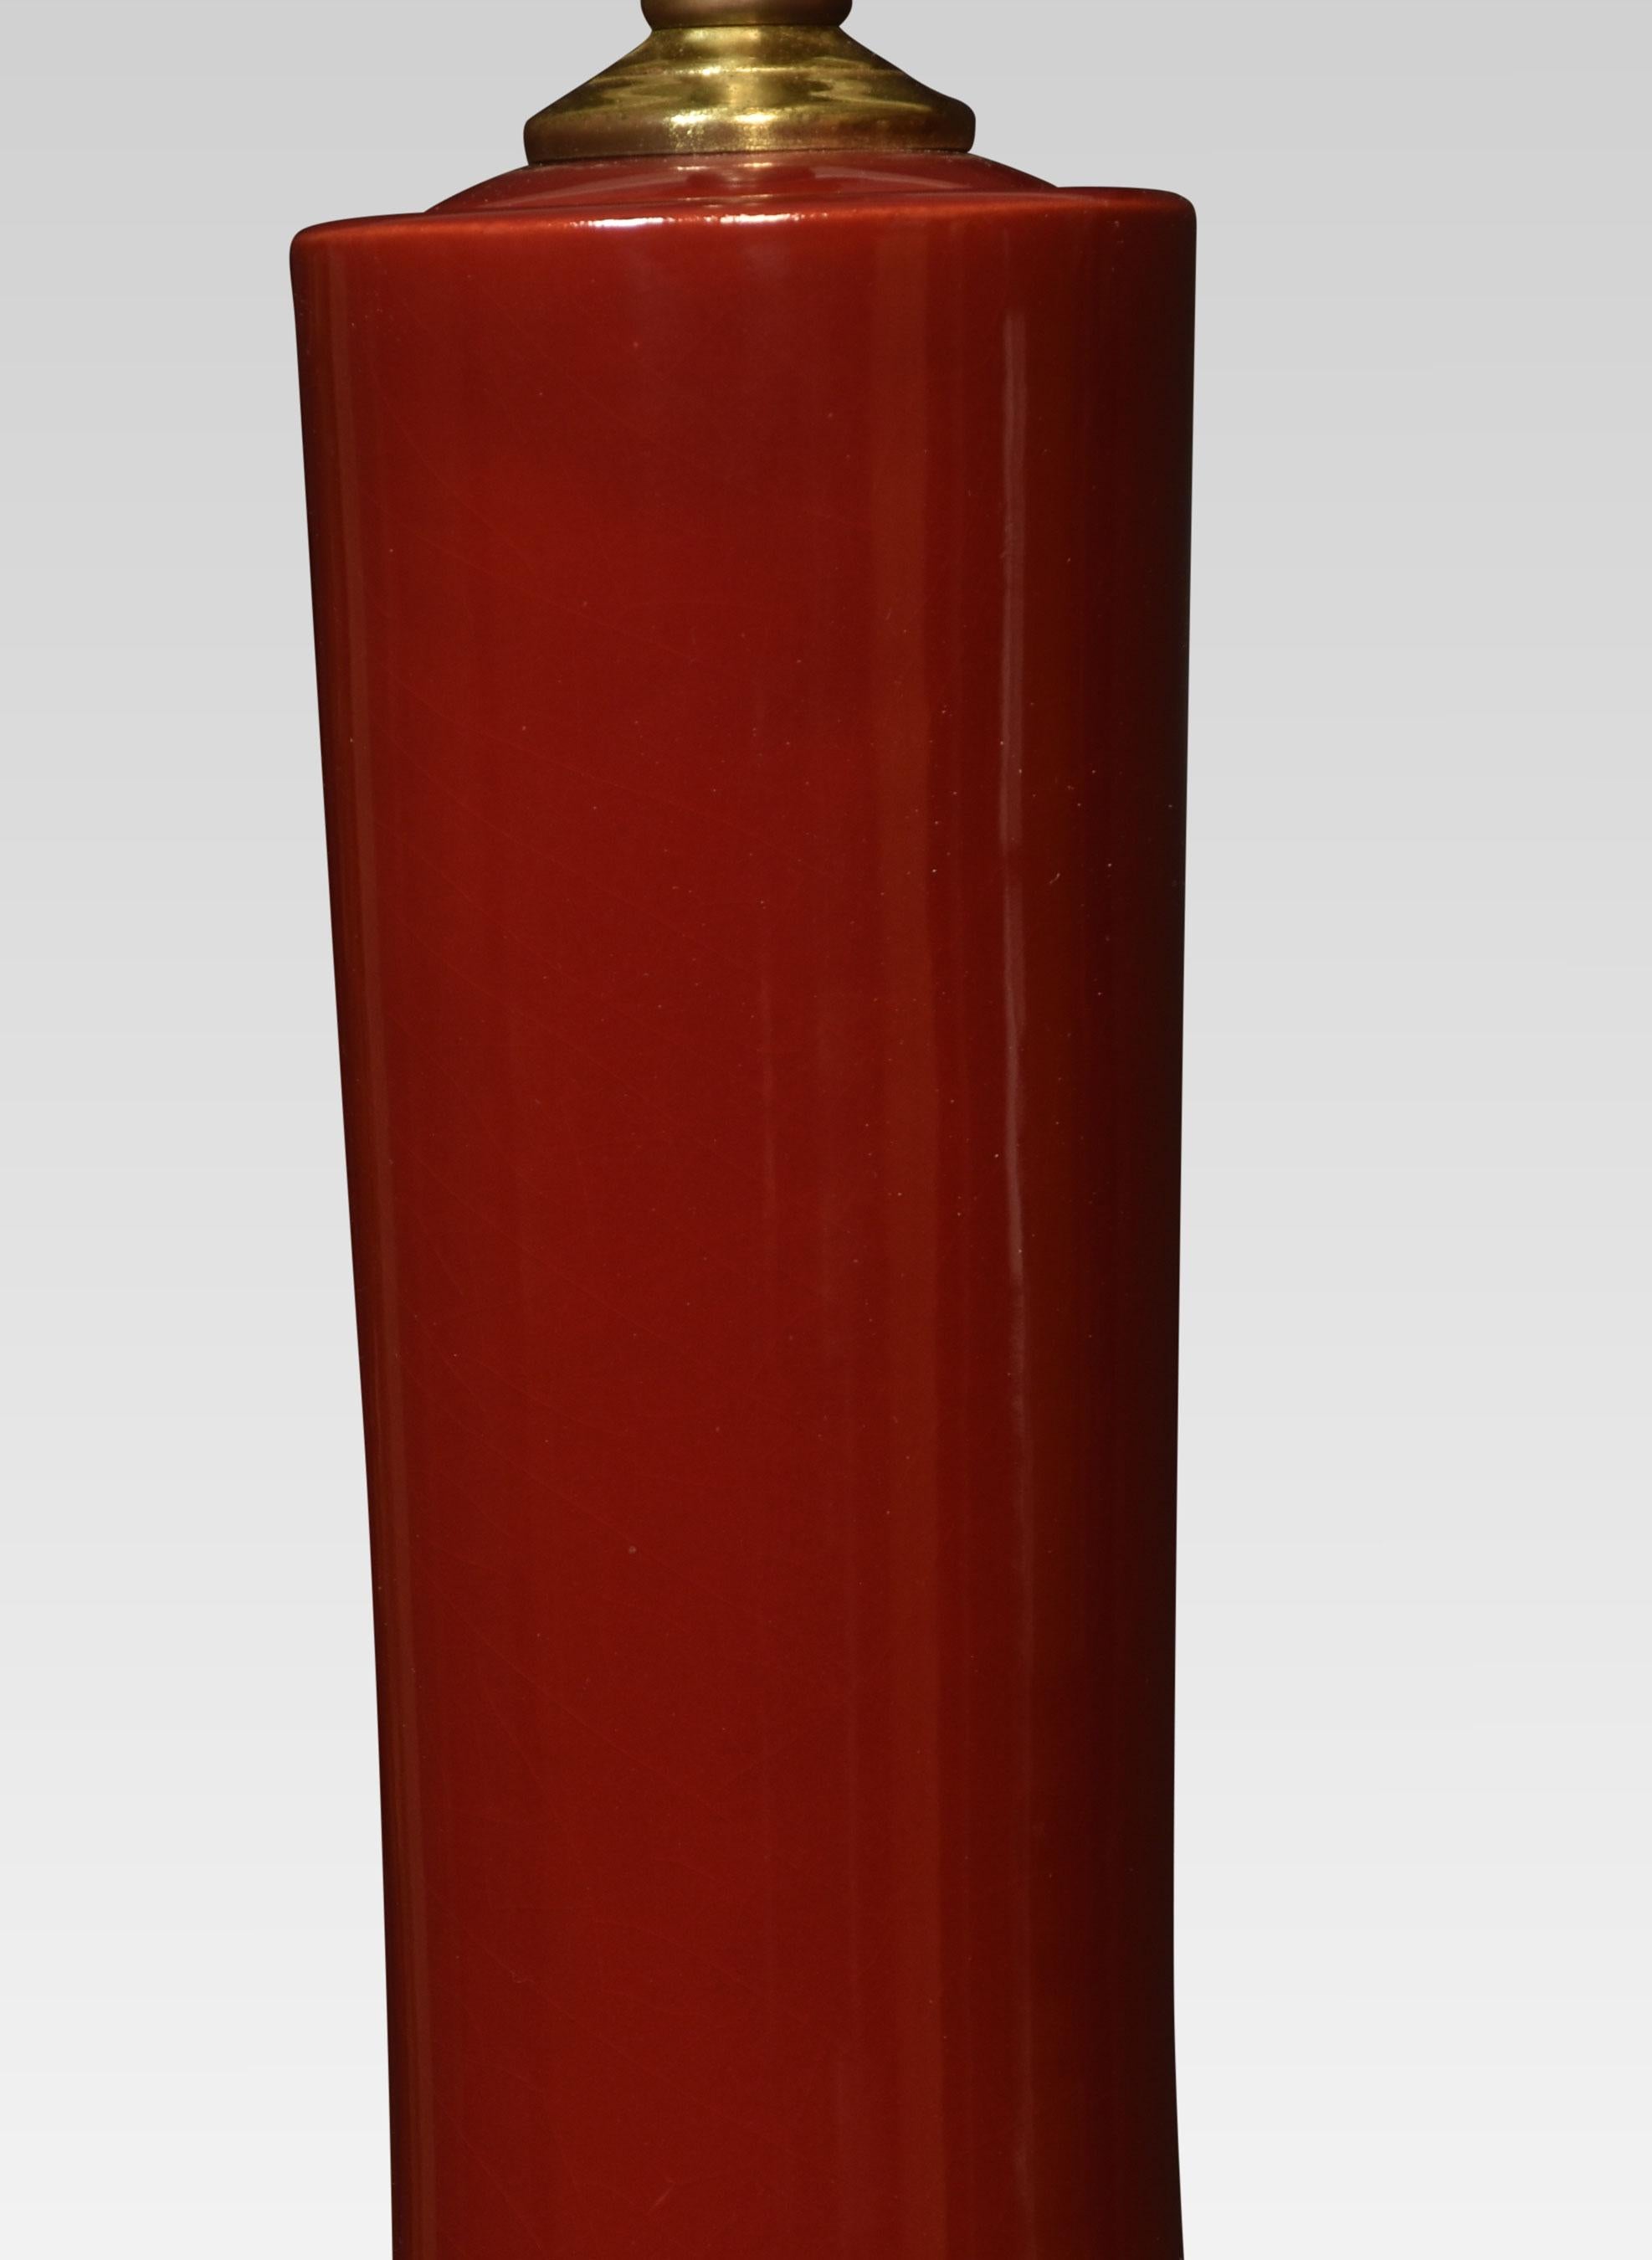 Chinesische Vasenlampe aus flammglasiertem Porzellan mit rundem, abgestuftem Sockel.
Abmessungen
Höhe 23 Zoll
Breite 10 Zoll
Tiefe 10 Zoll